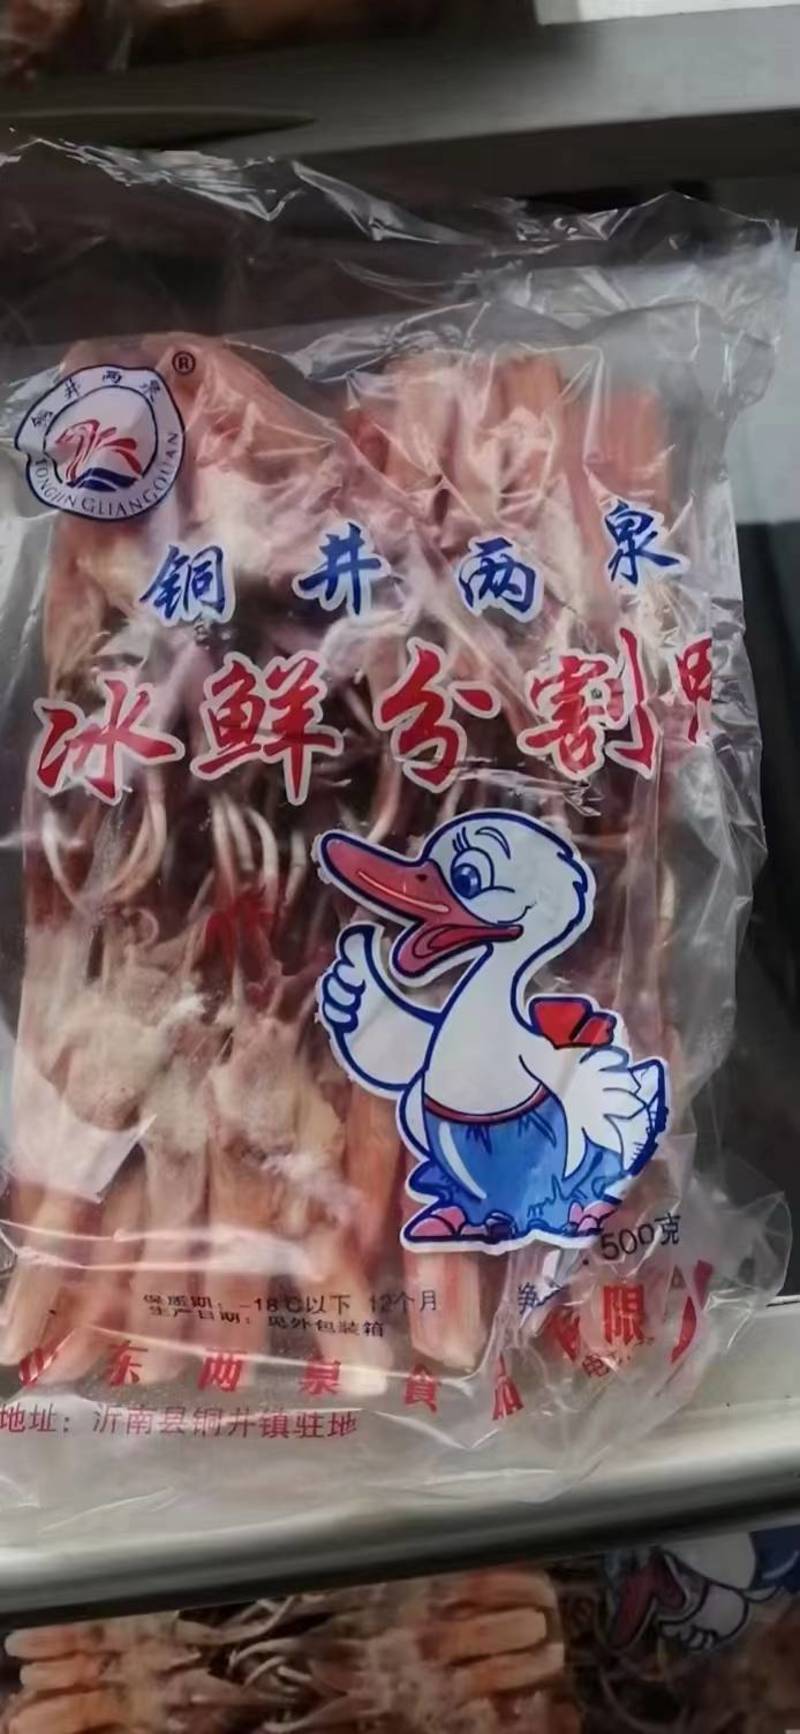 鸭舌品牌庄锦记鸭舌颜色新鲜小鸭舌20斤用途广火锅串串烧烤